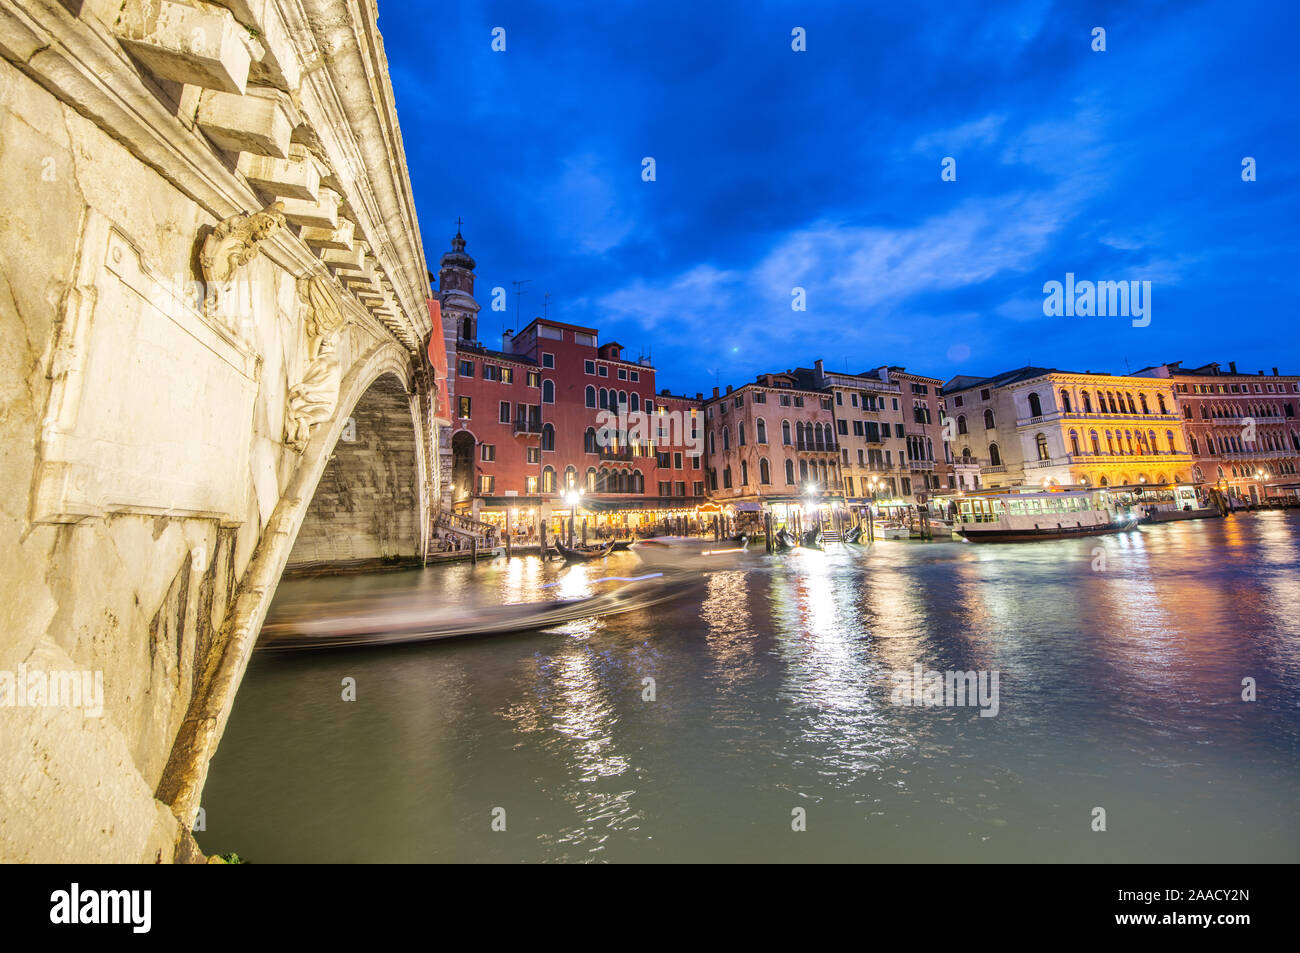 Rialto Bridge at night with city restaurants along grand canal, Venice, Italy. Stock Photo